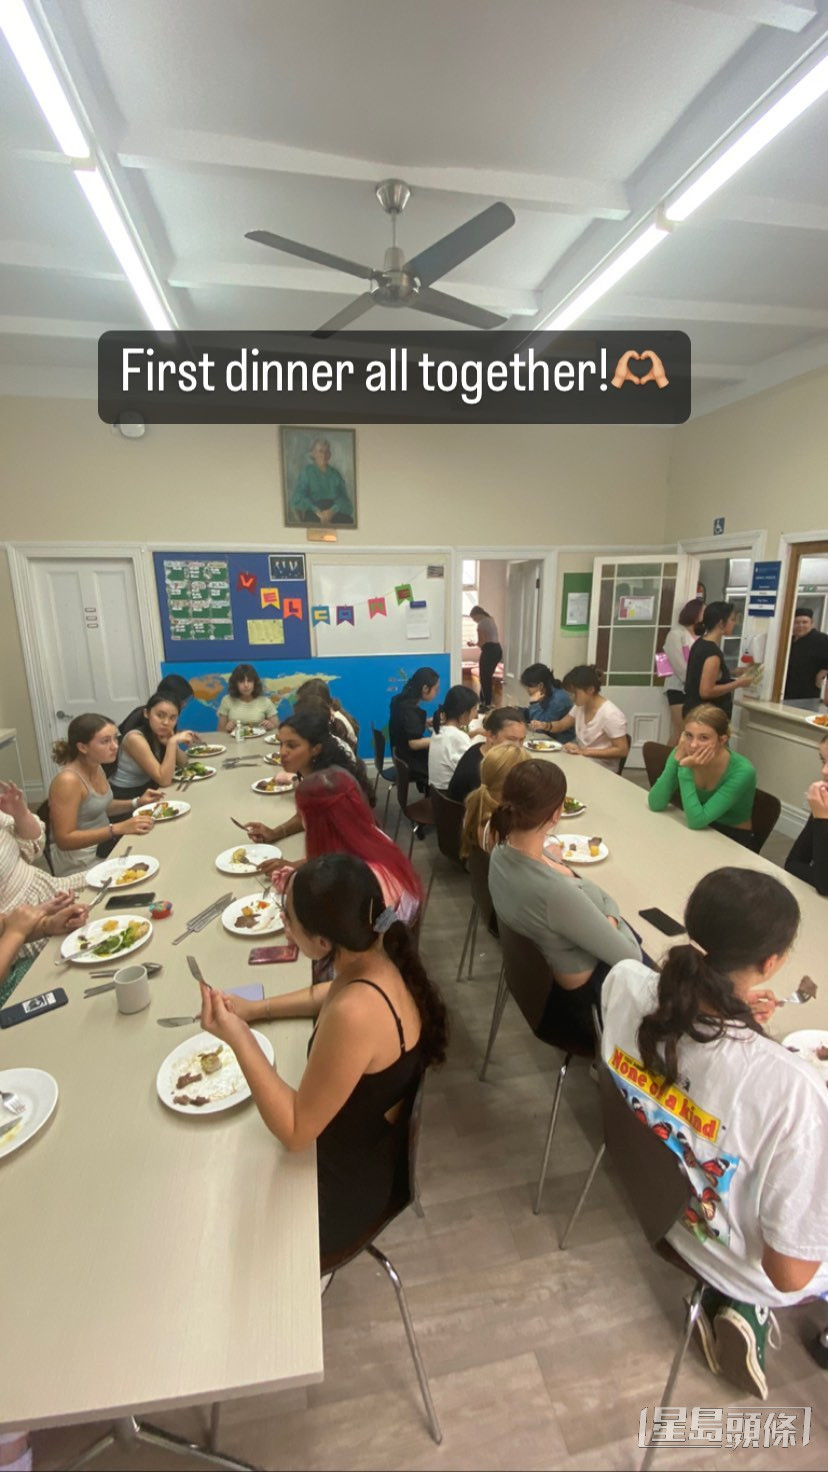 昨晚與同學首次一同享受晚餐。